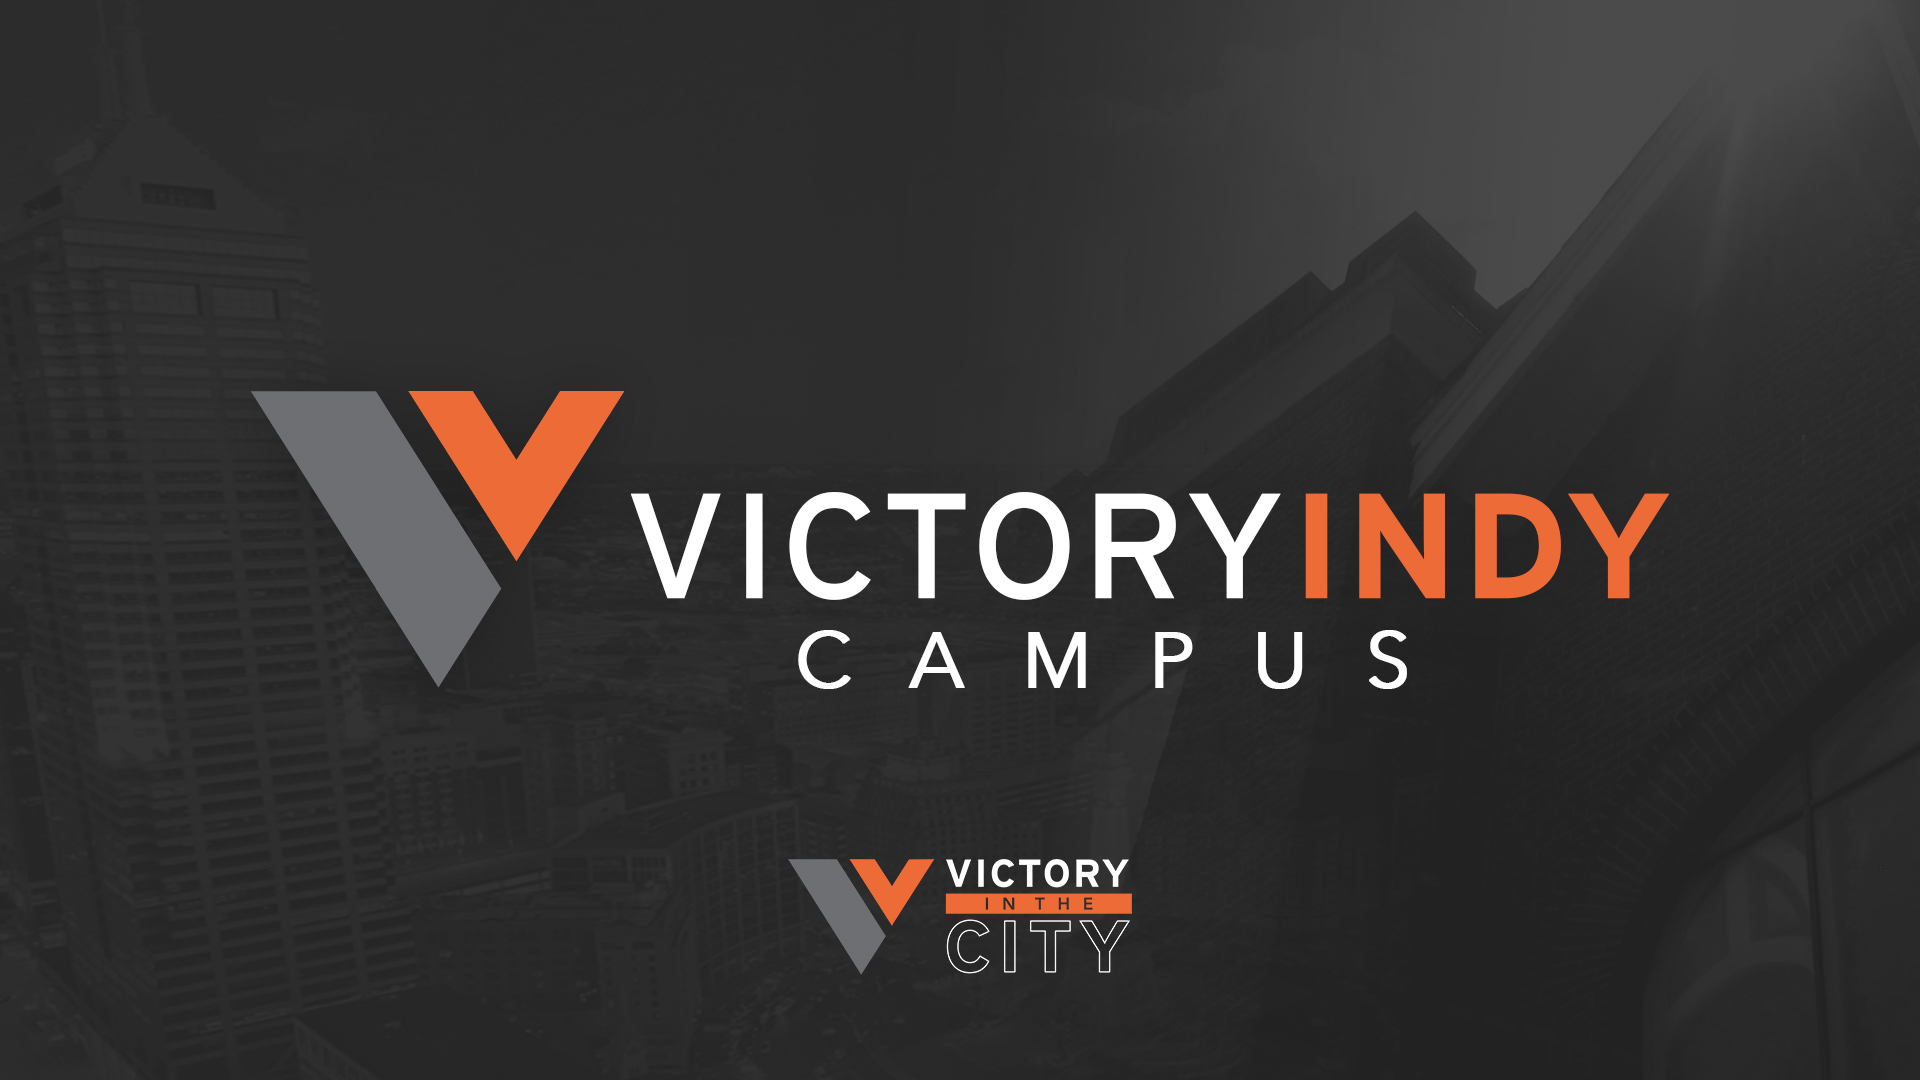 Victory Indy Campus